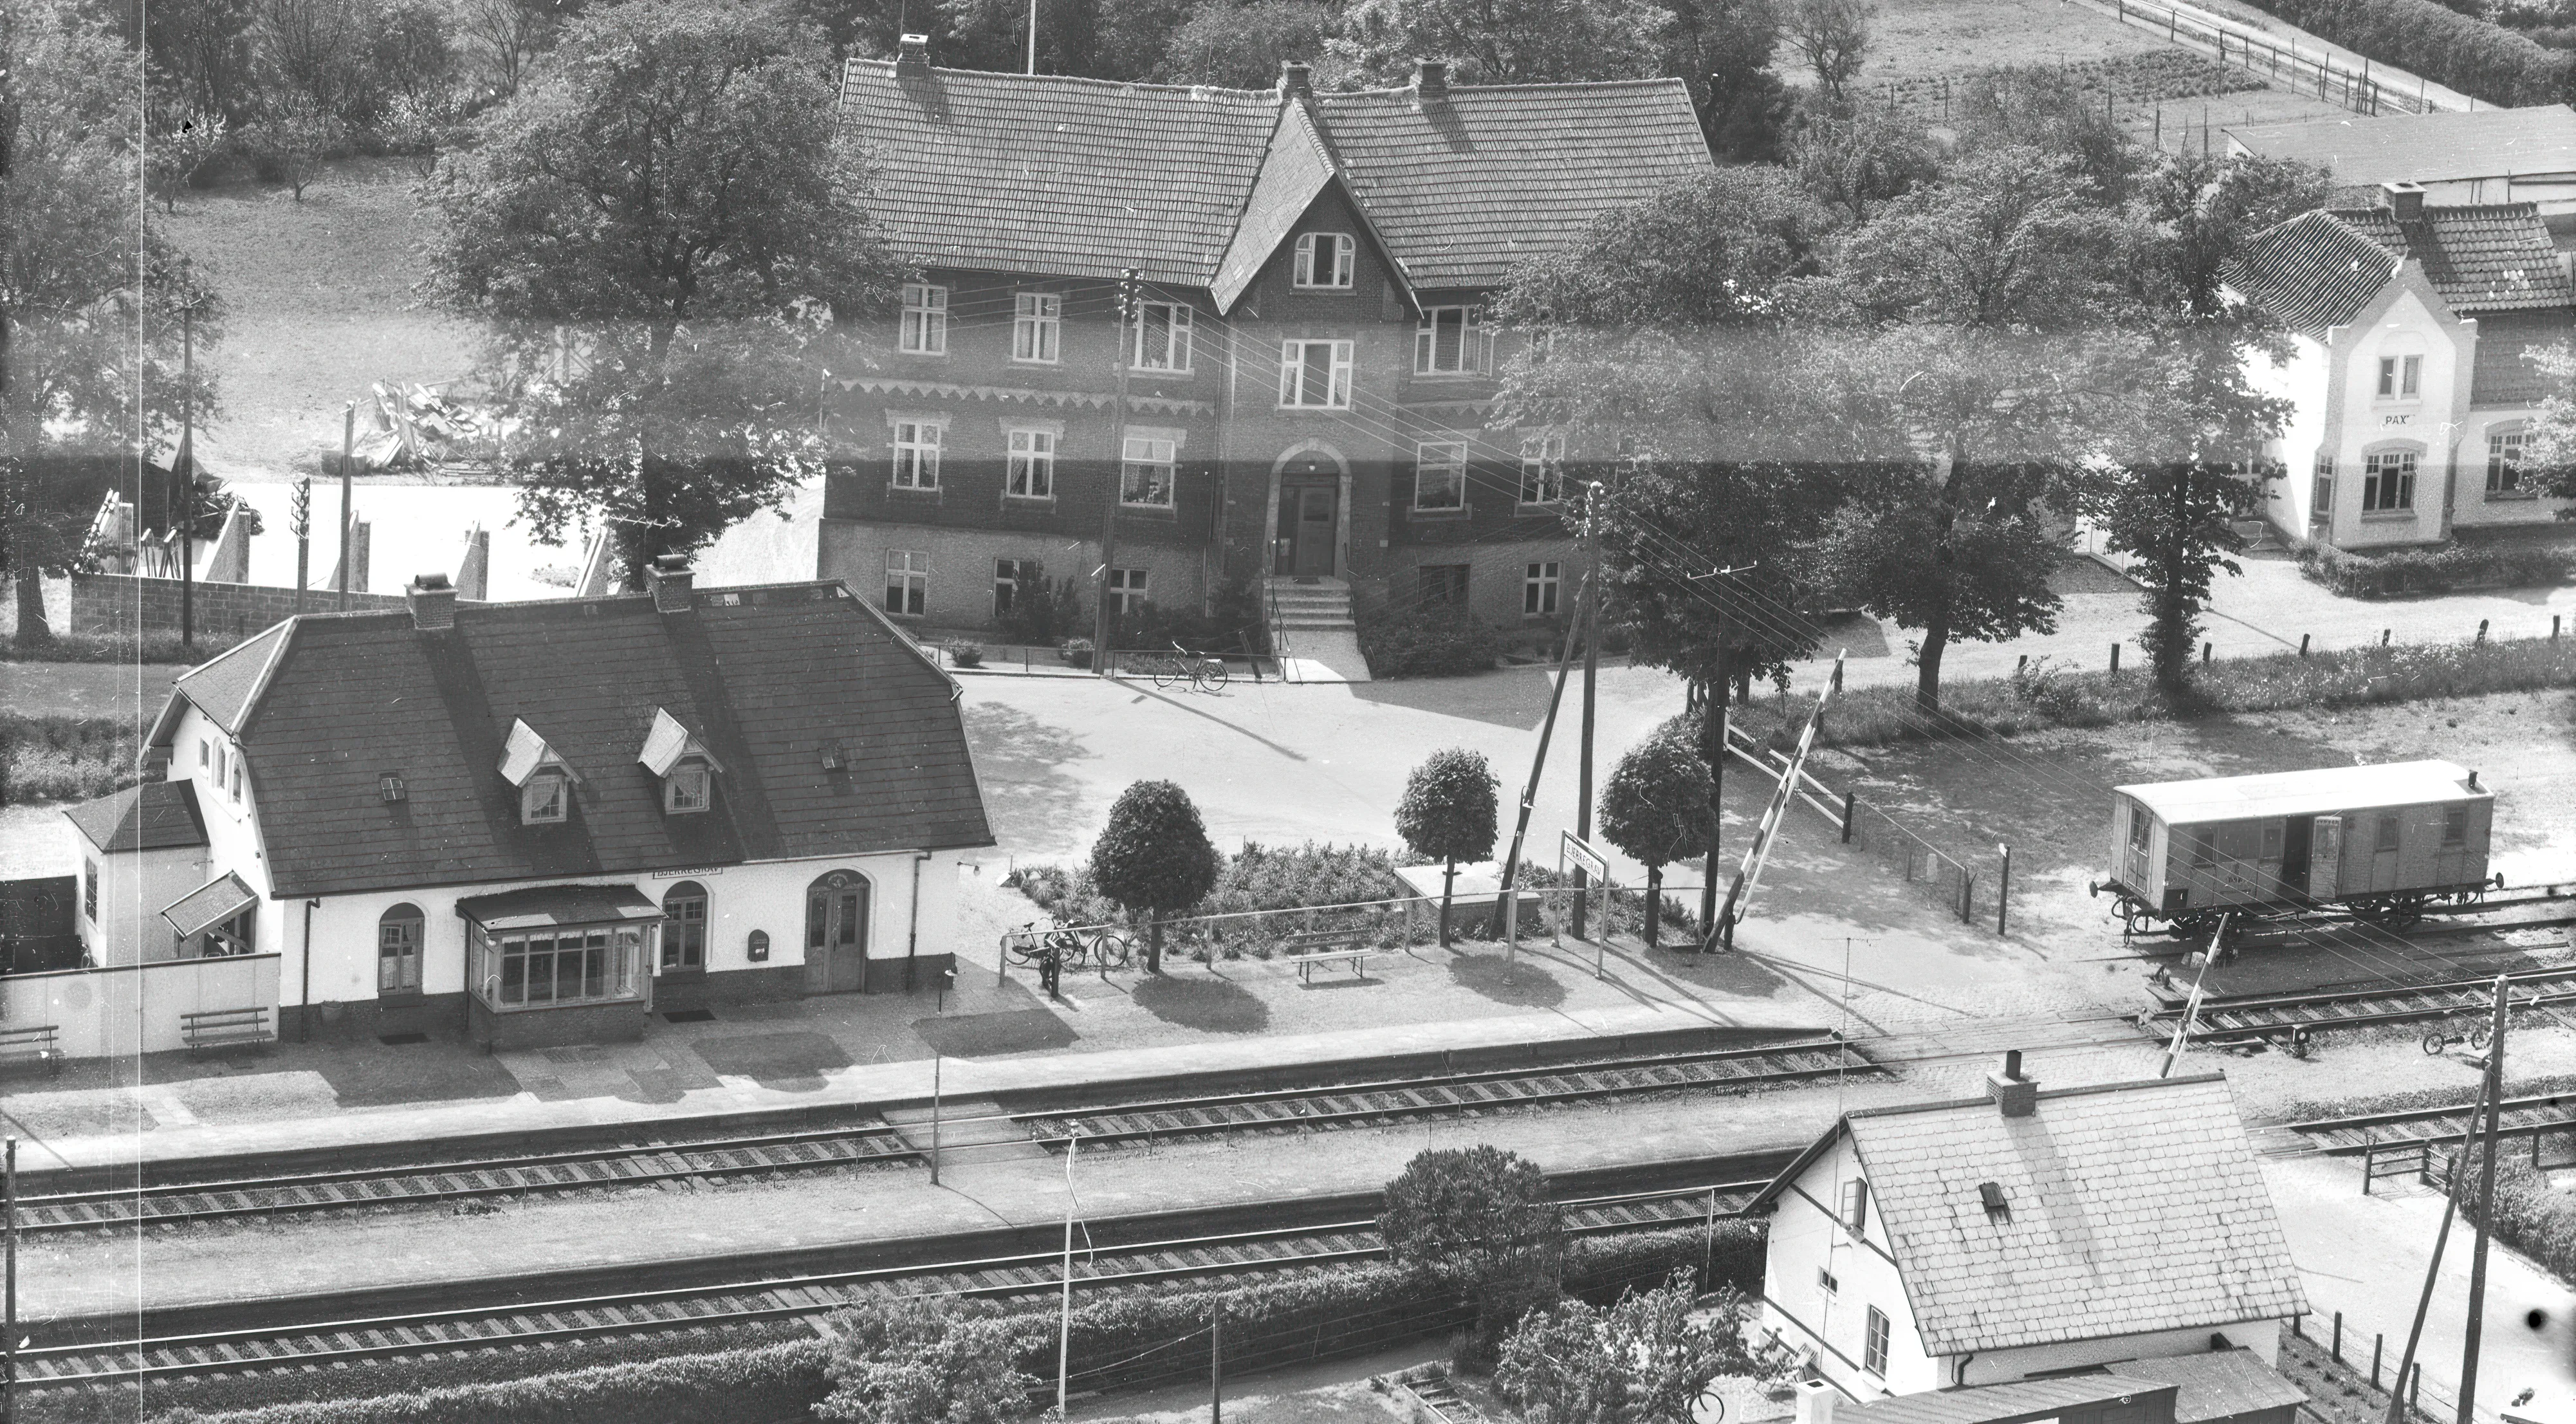 Billede af Bjerregrav Station.